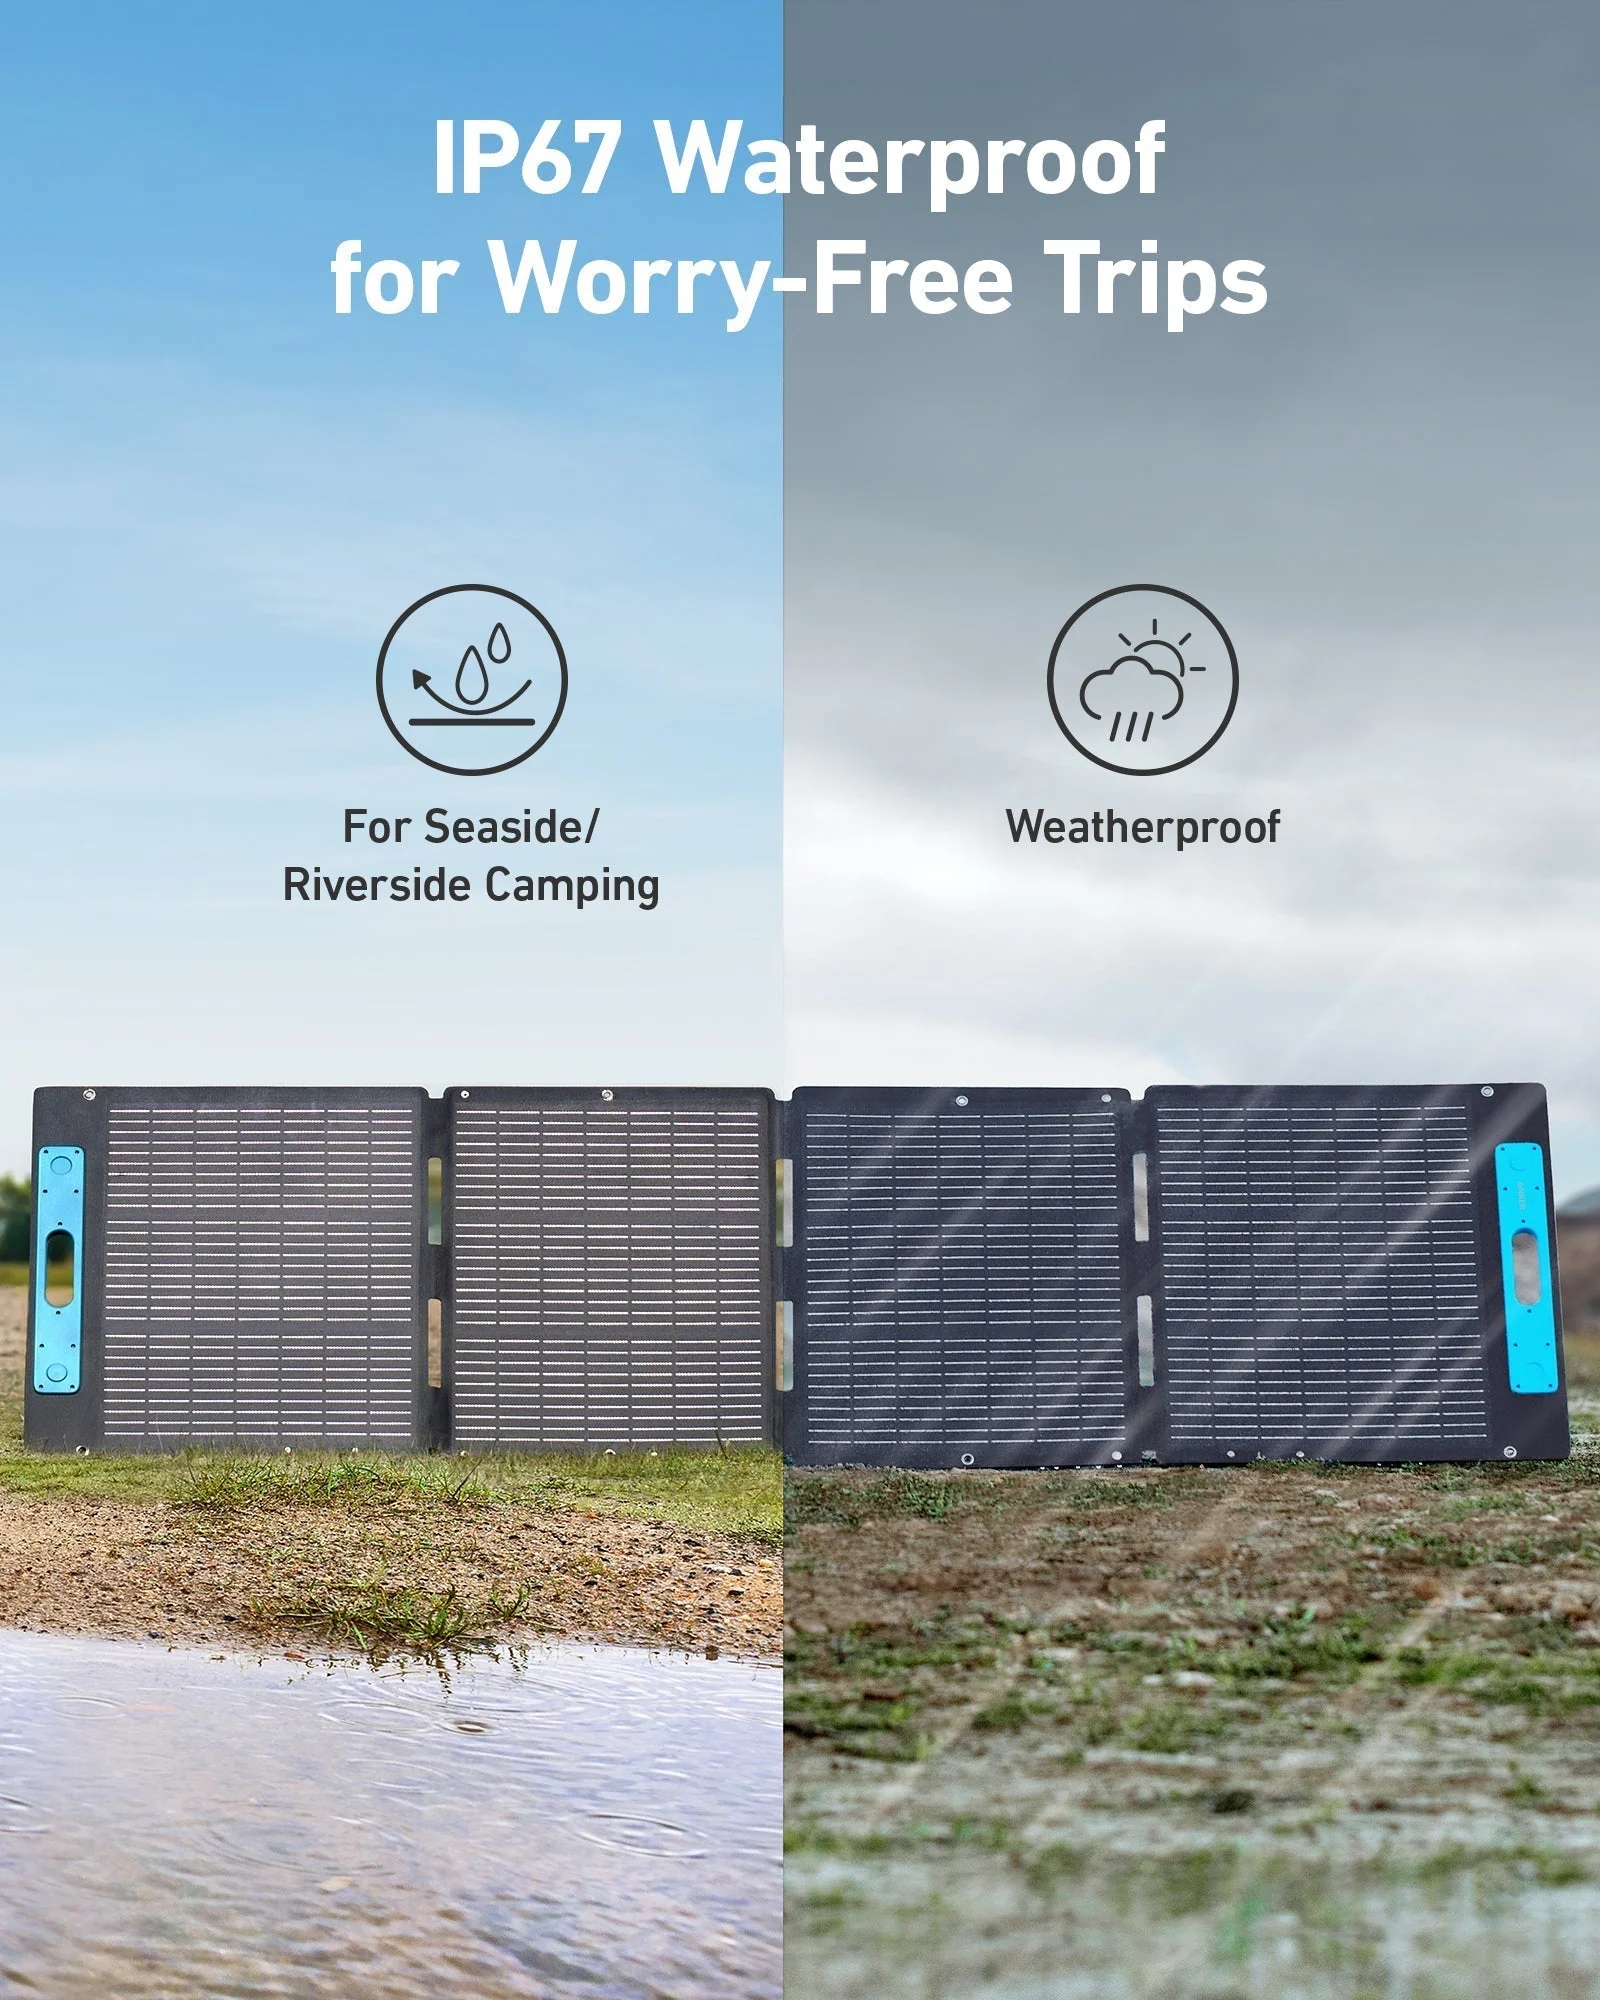 Ip67 waterproof for worry free emergency food storage trips.